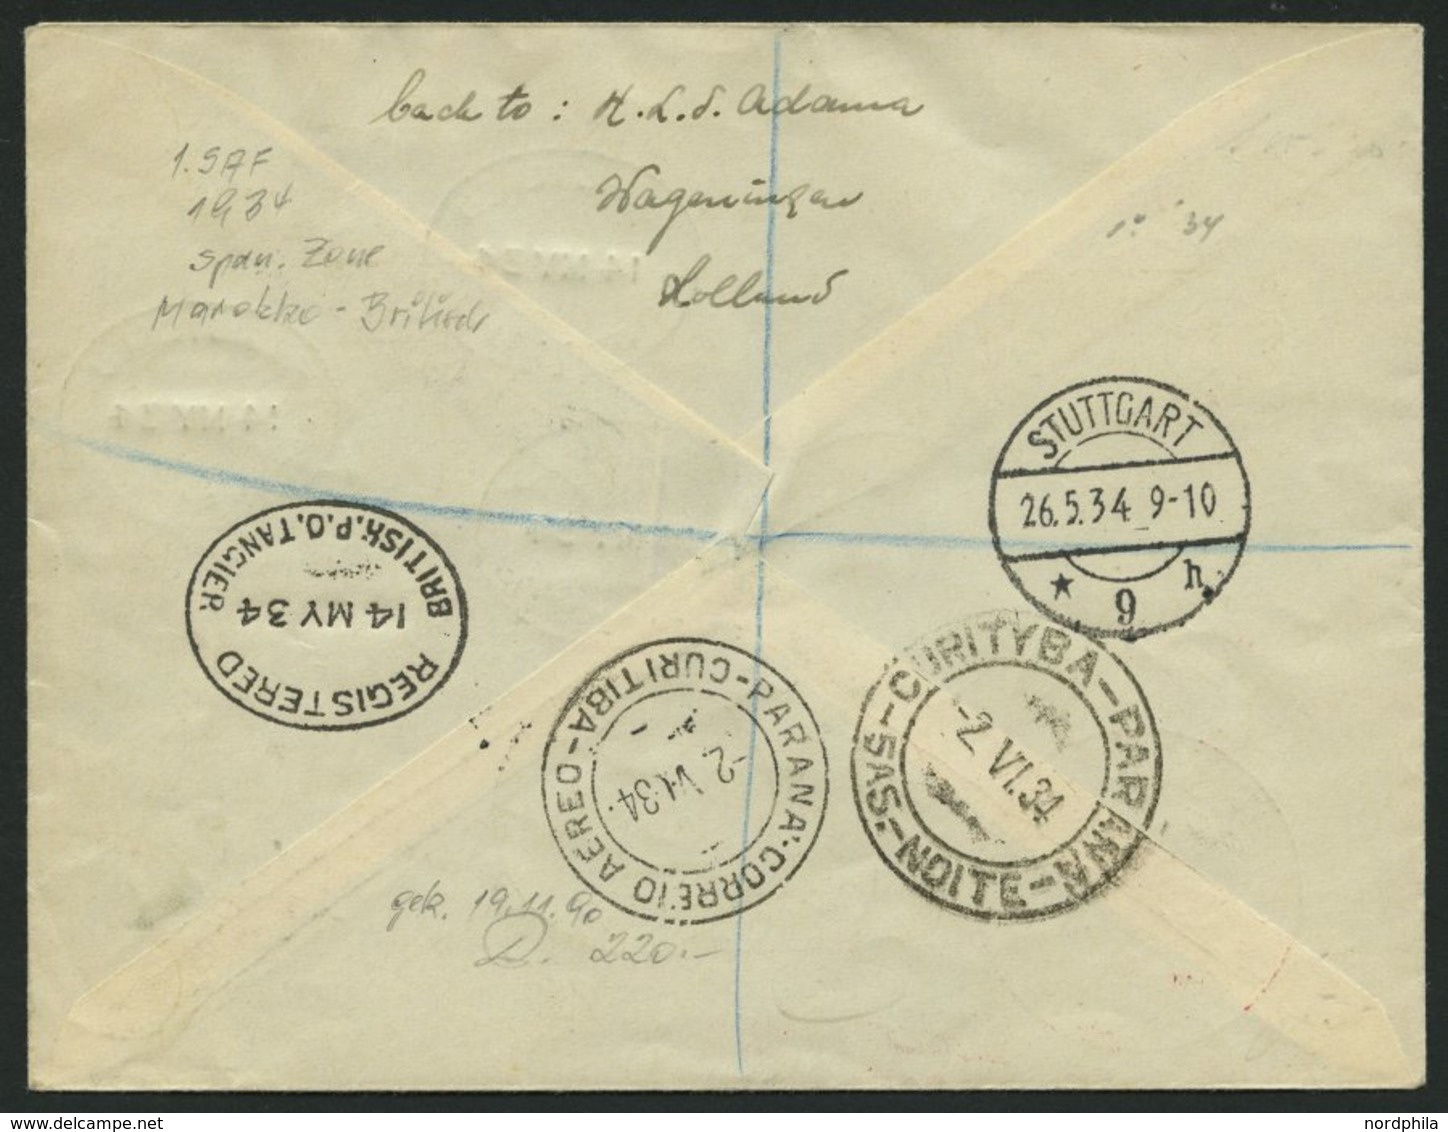 ZULEITUNGSPOST 247 BRIEF, Britische Post In Marokko (Tanger): 1934, 1. Südamerikafahrt, Einschreib-Drucksache Aus Tanger - Posta Aerea & Zeppelin